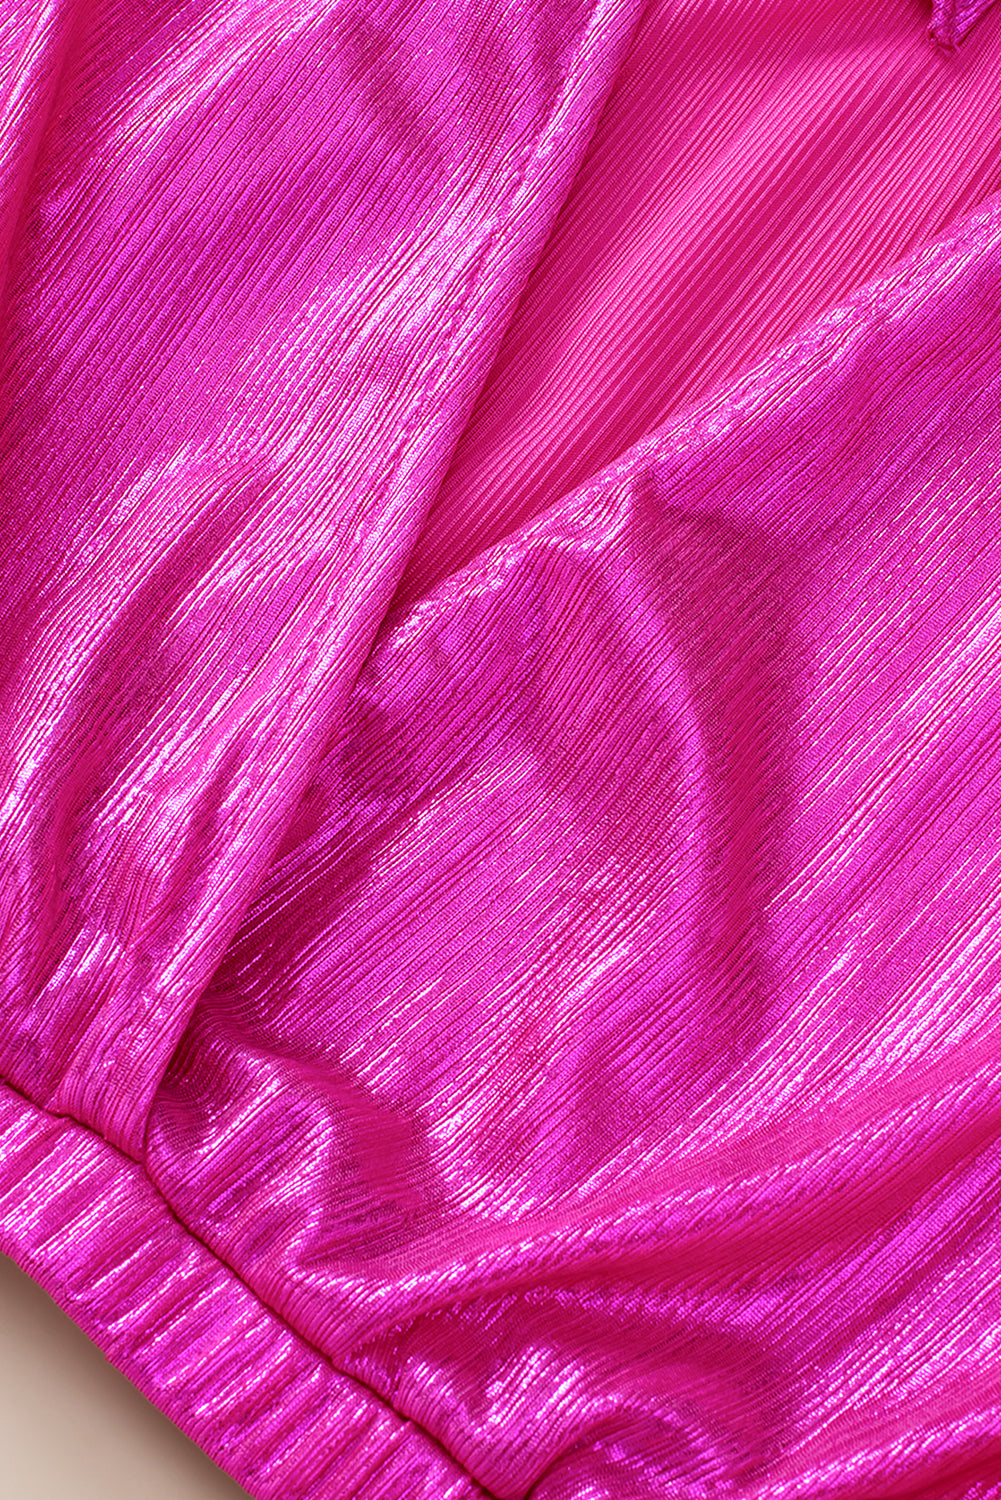 Camicetta senza schienale annodata con maniche increspate rosa brillante